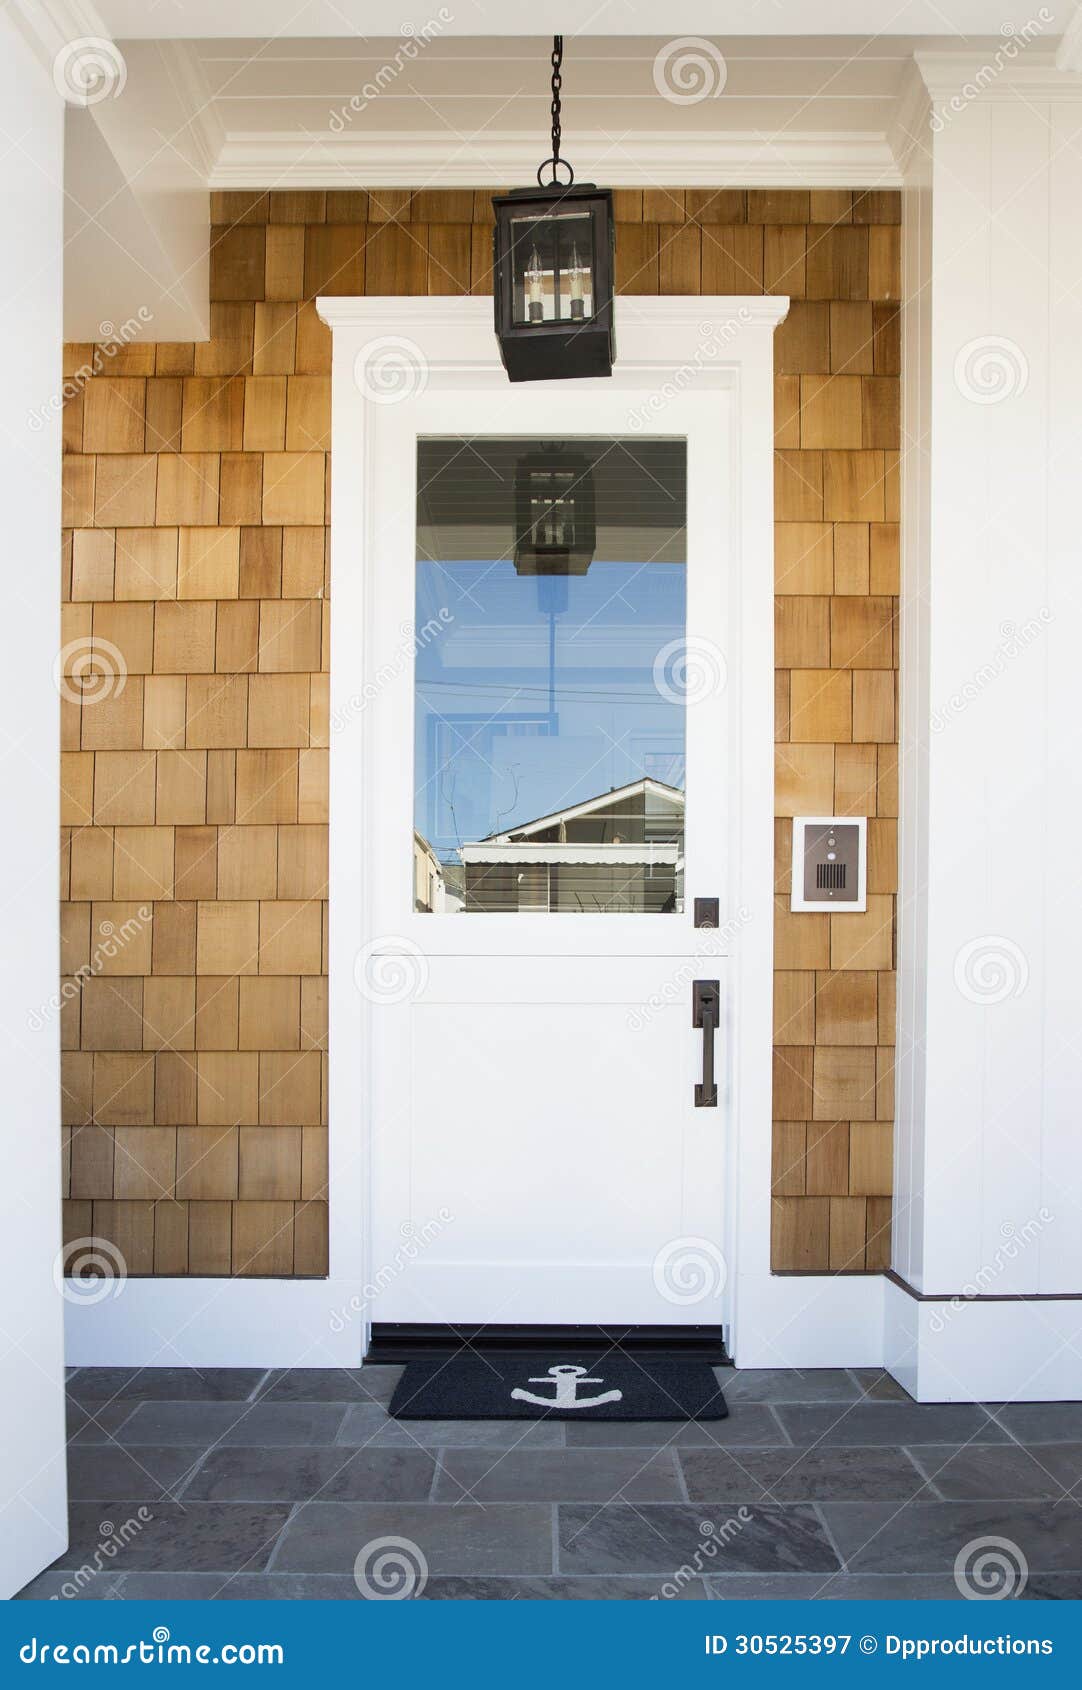 front door of an upscale home